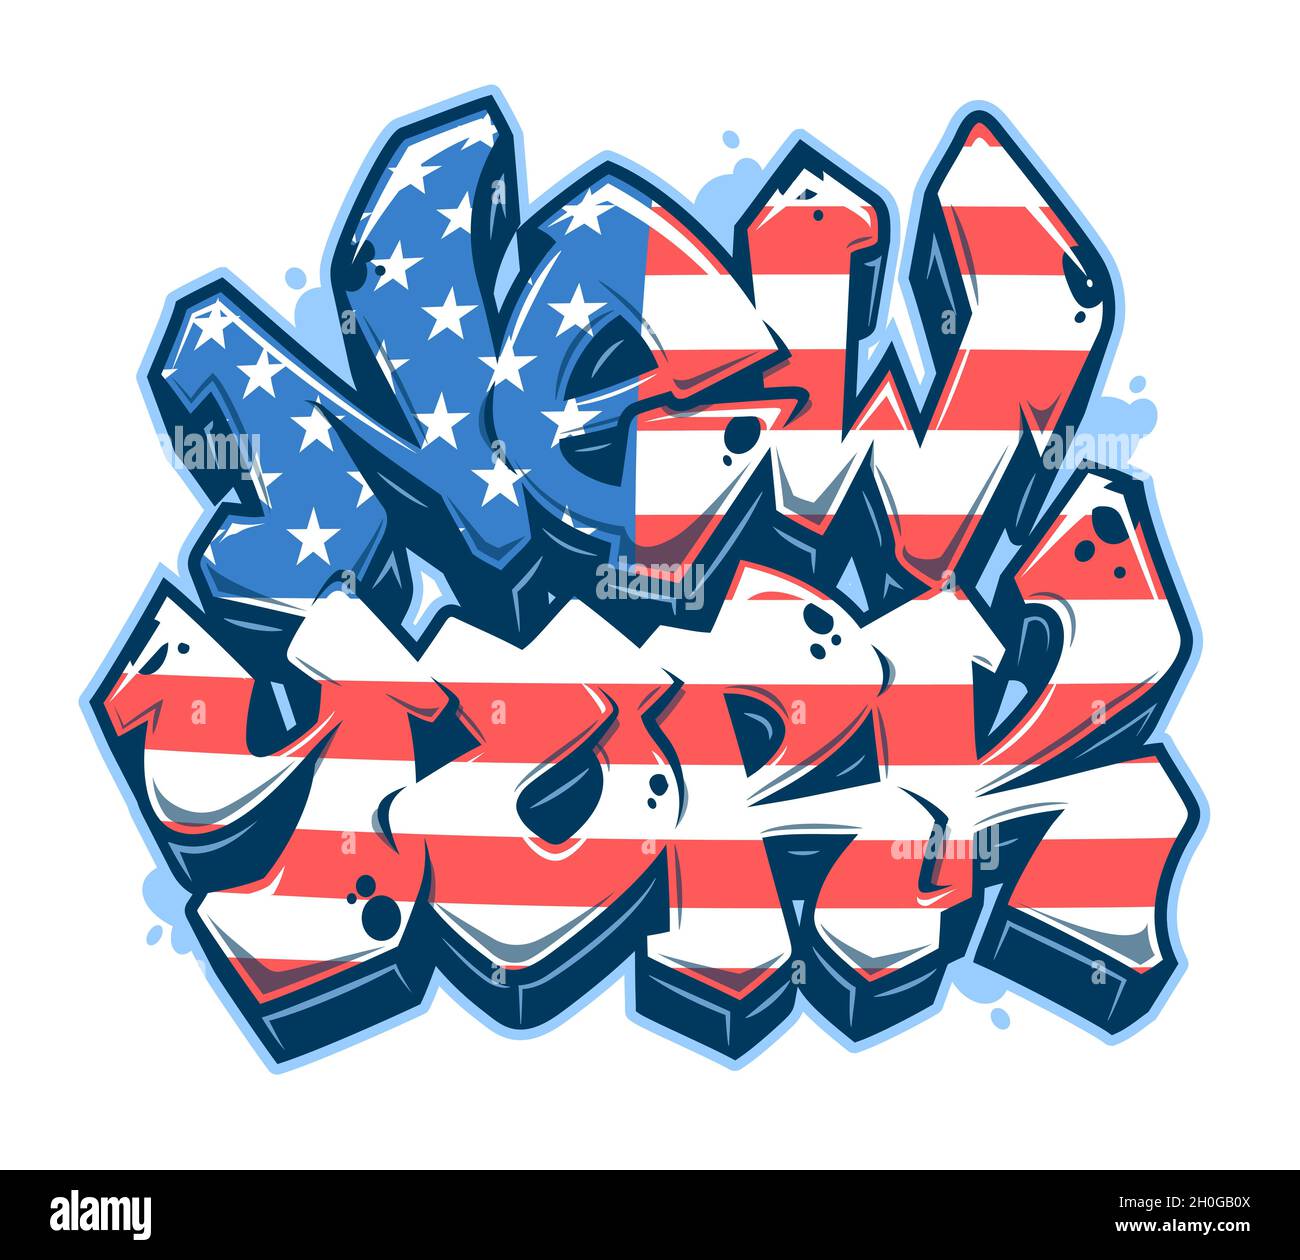 New York Schriftzug im lesbaren Graffiti-Stil mit US-amerikanischer Flagge. Isoliert auf weißem Hintergrund. Stock Vektor